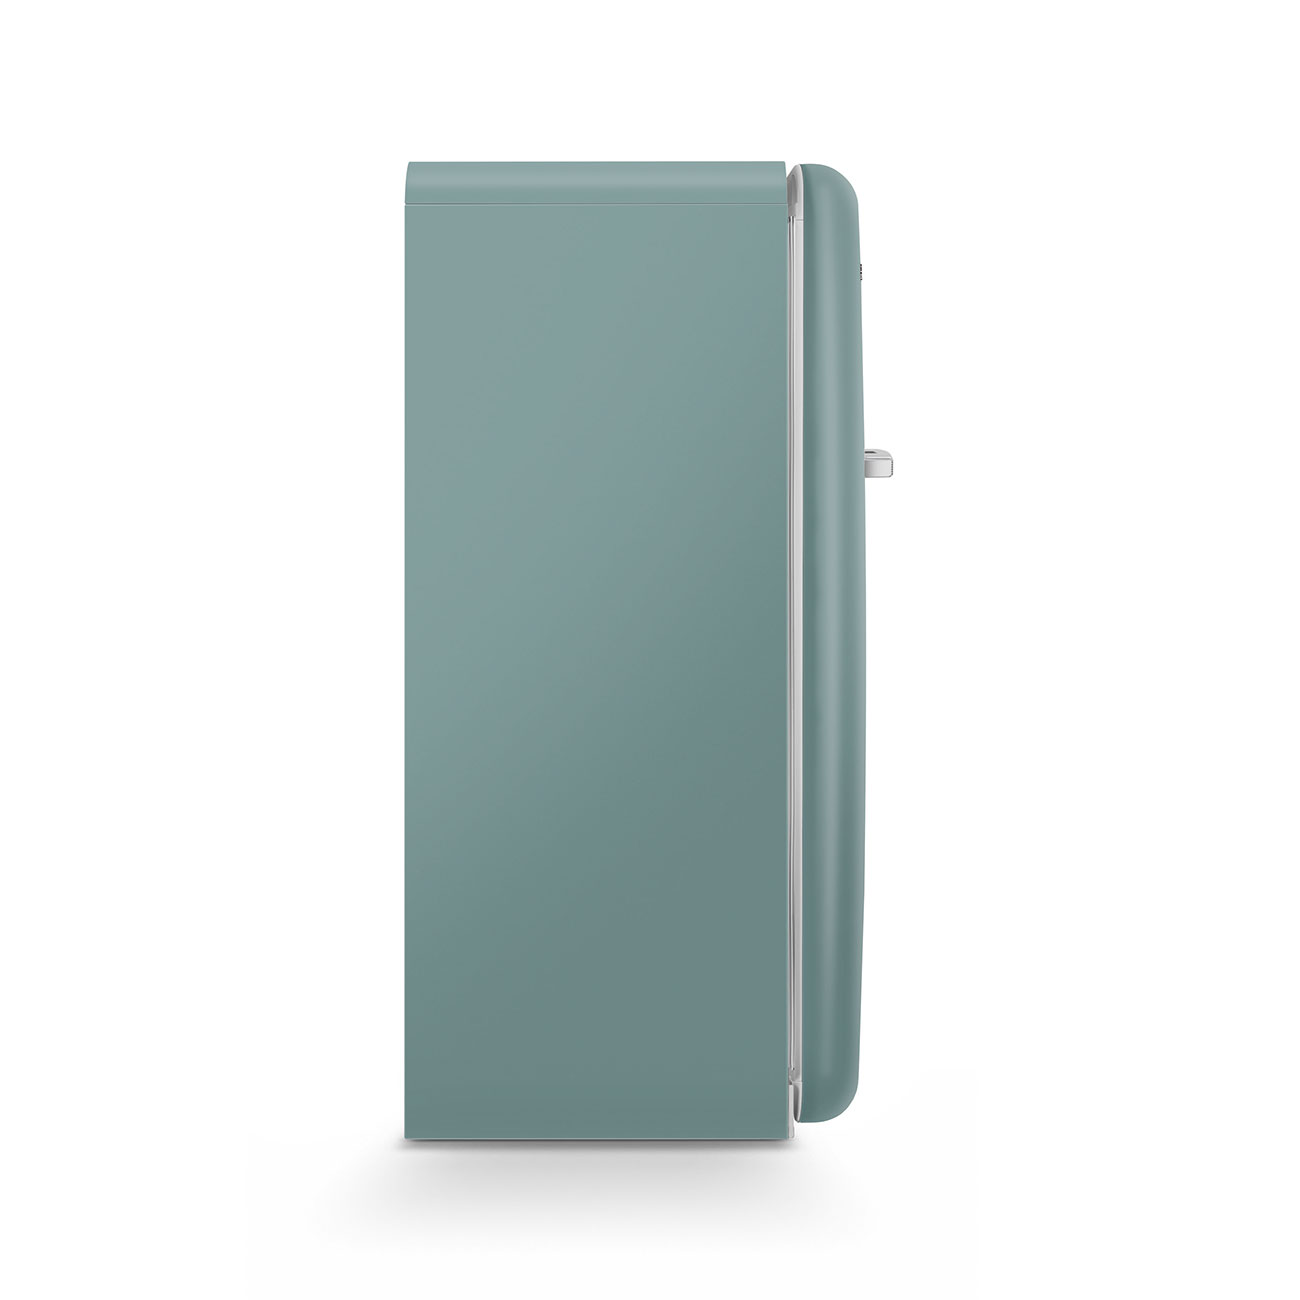 Emerald Green refrigerator - Smeg_9